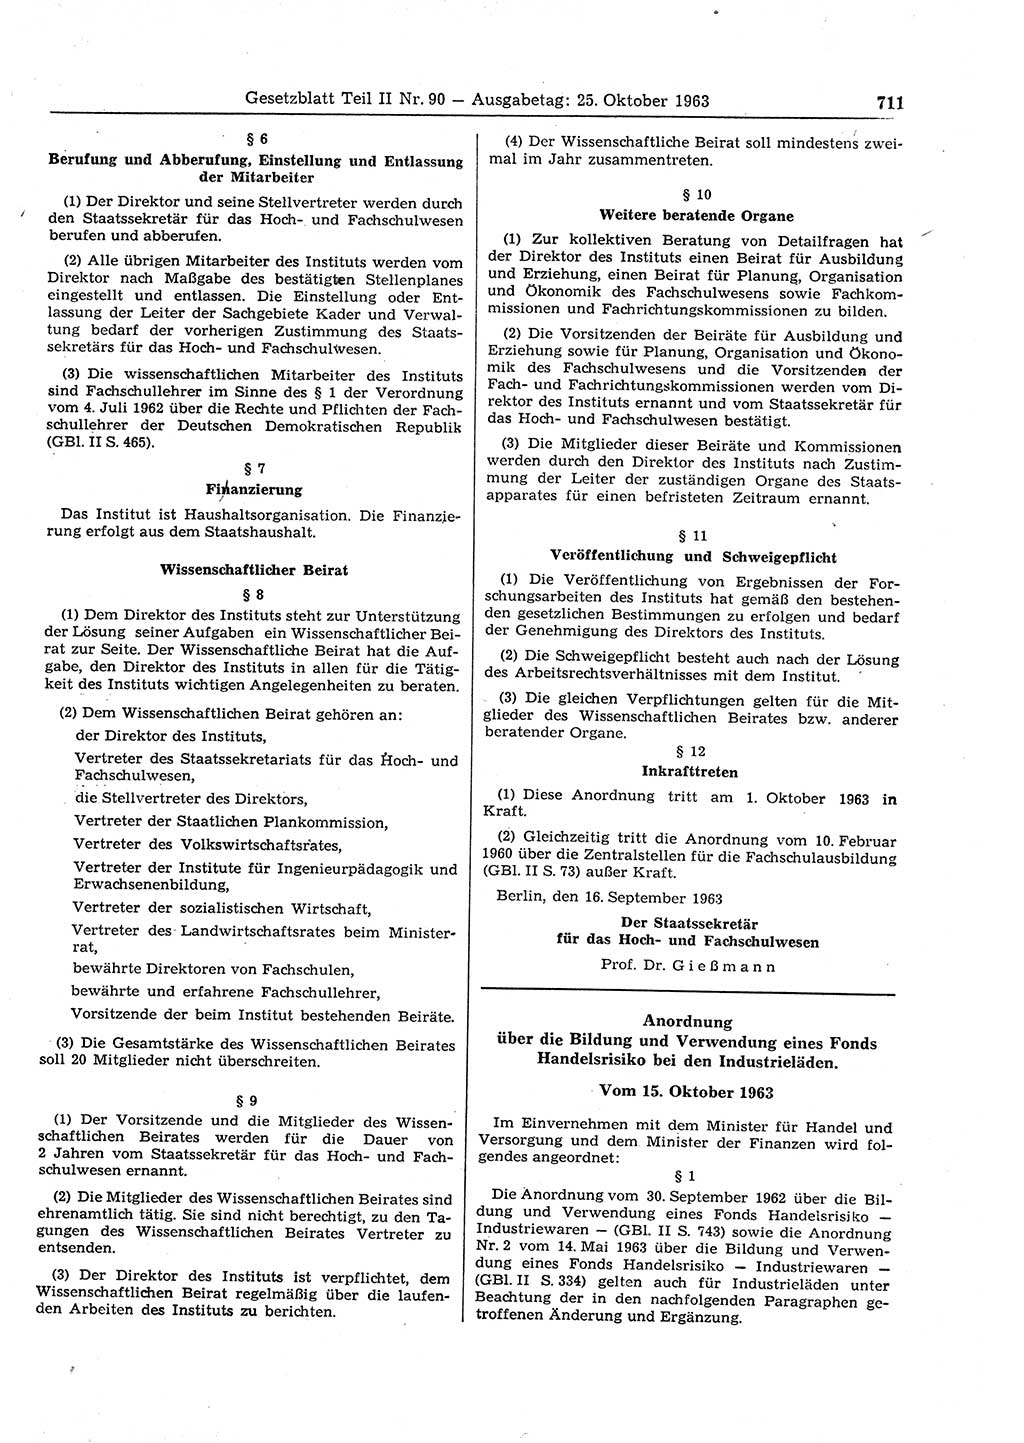 Gesetzblatt (GBl.) der Deutschen Demokratischen Republik (DDR) Teil ⅠⅠ 1963, Seite 711 (GBl. DDR ⅠⅠ 1963, S. 711)